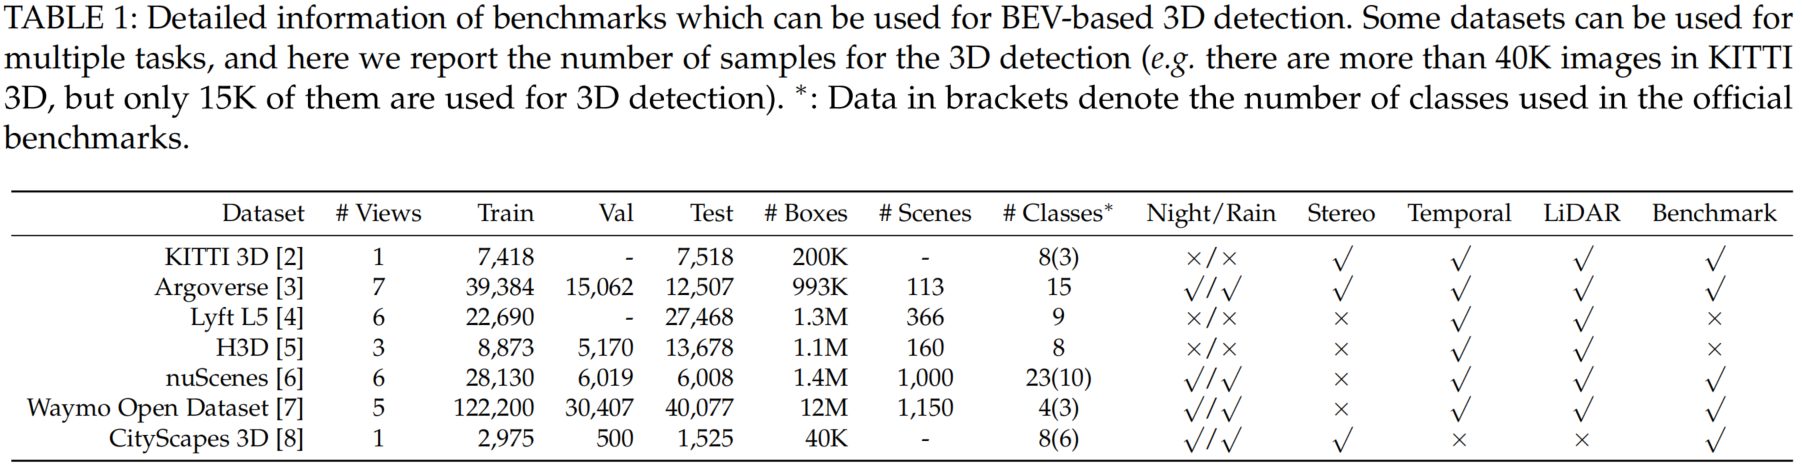 table_Datasets_bev